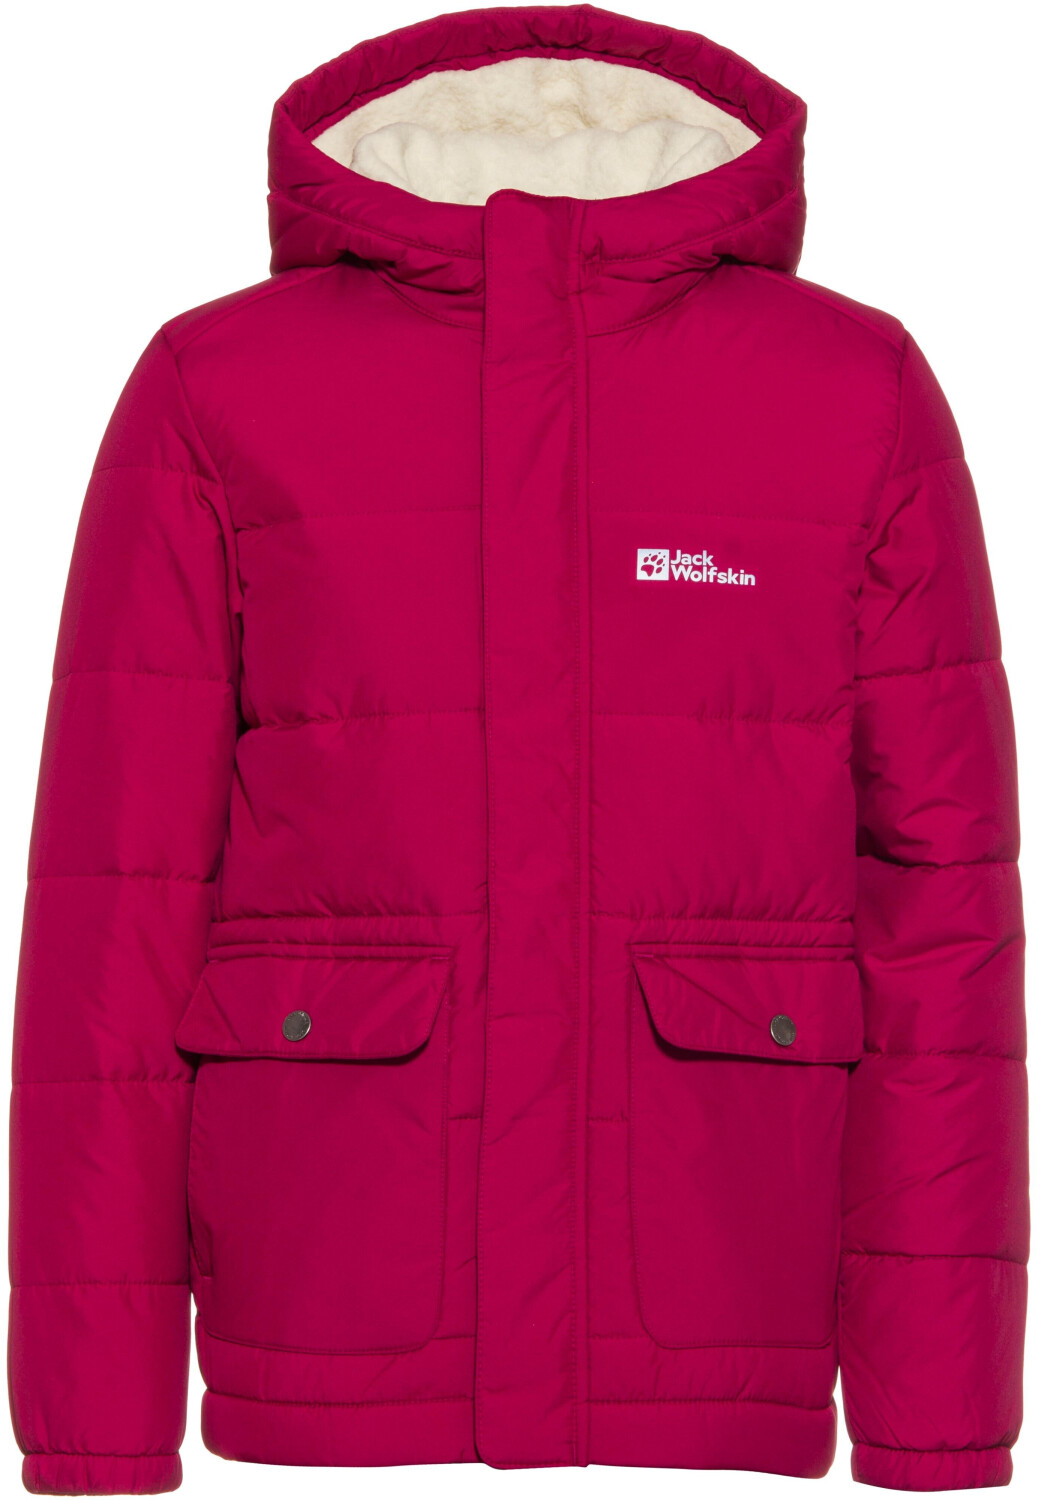 Jack Wolfskin Snow Fox Jacket K (1609102) dark ruby ab 76,95 € |  Preisvergleich bei